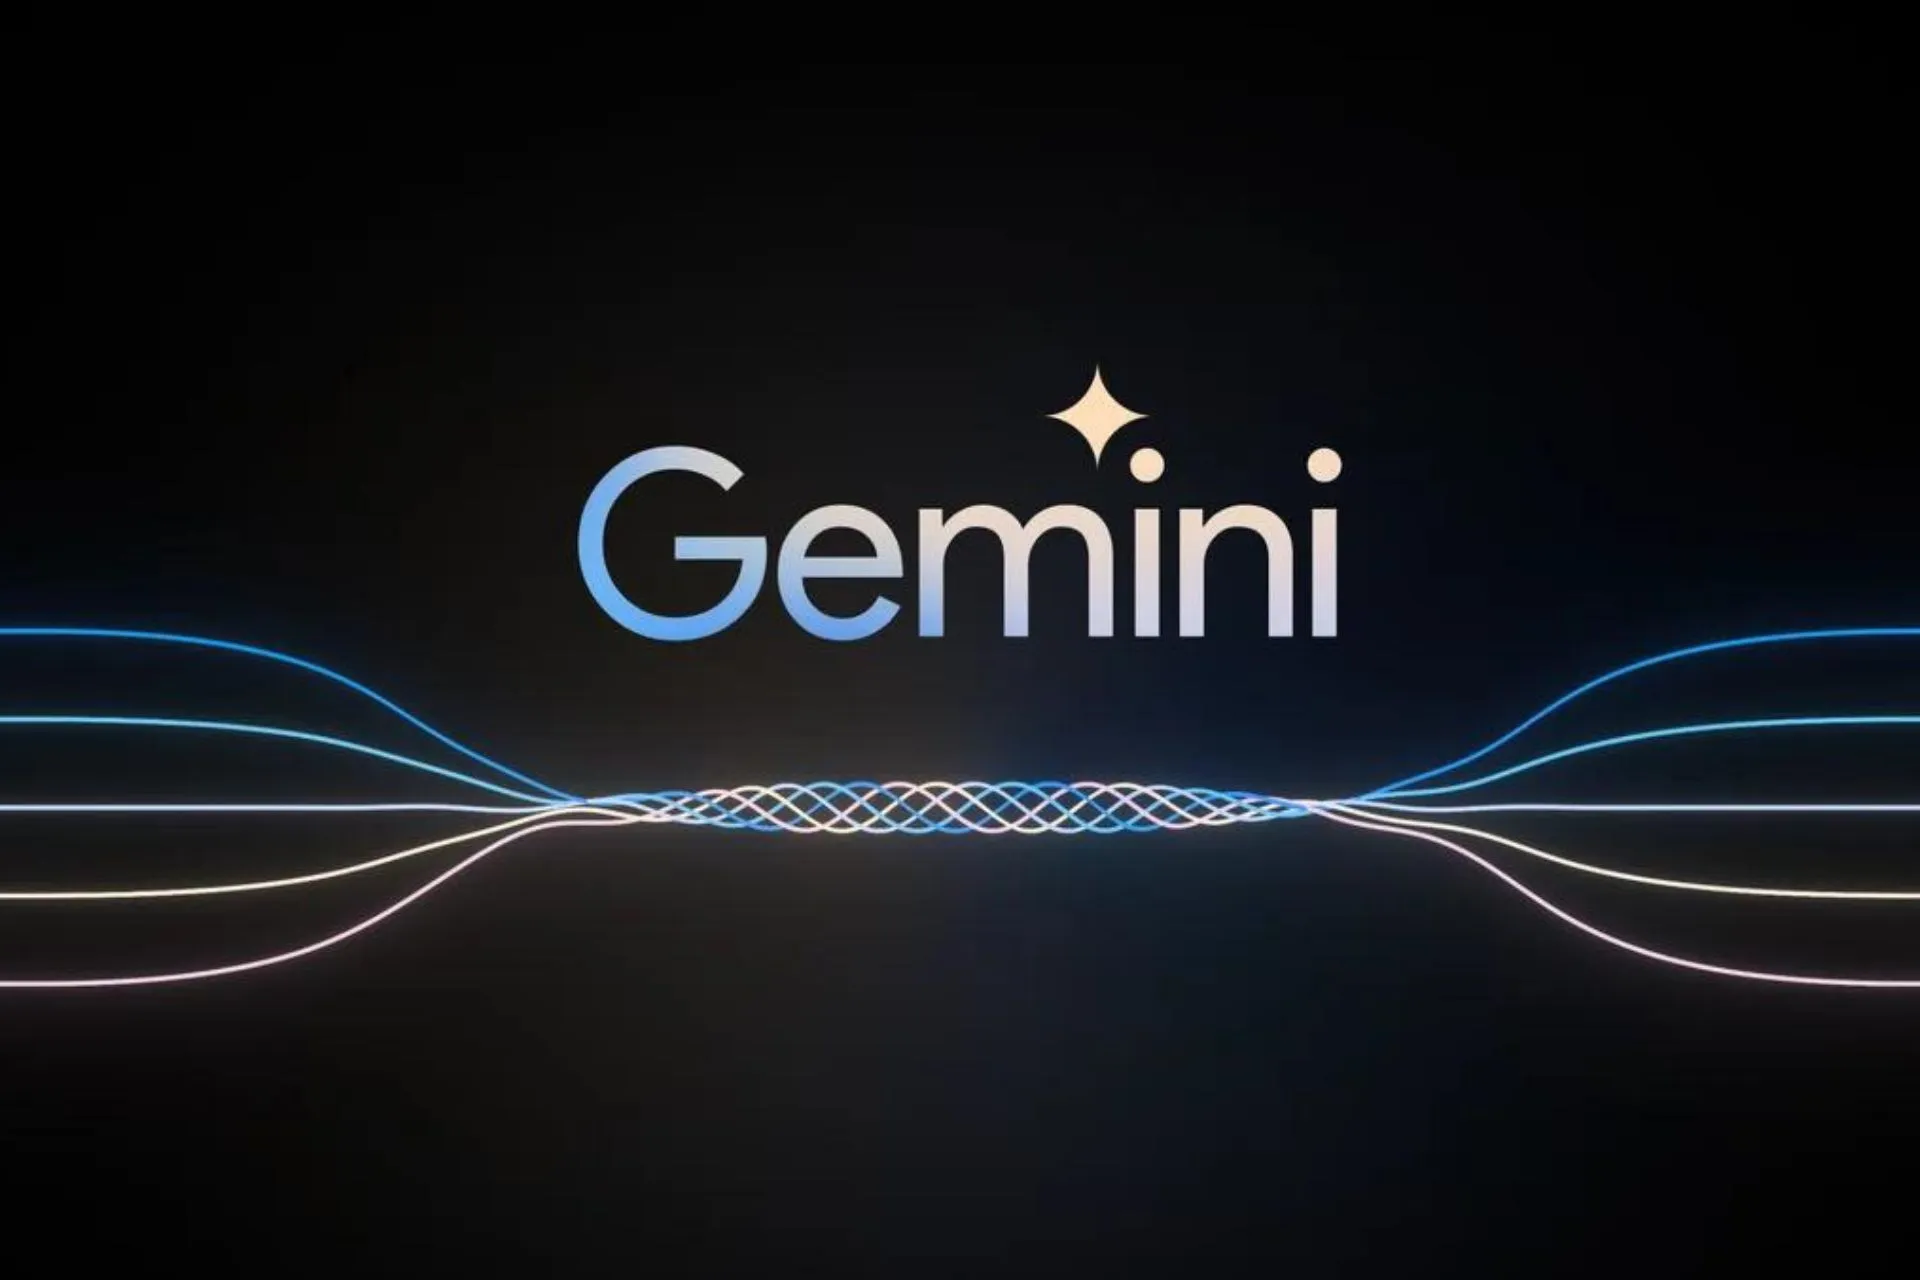 L'intelligenza artificiale di Google Gemini